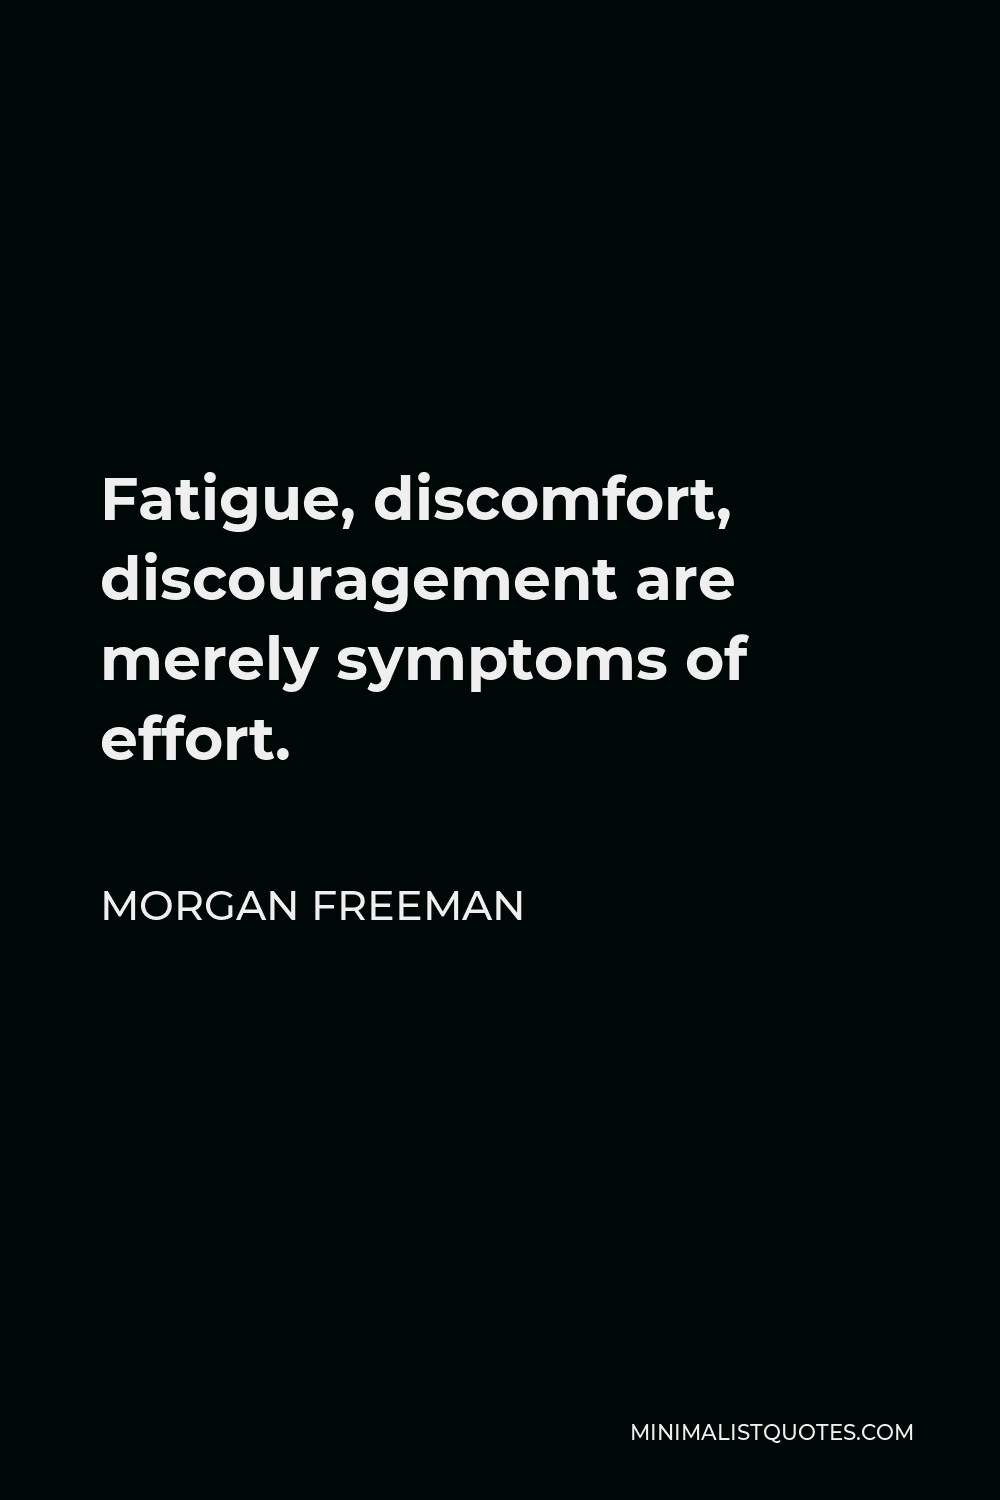 Morgan Freeman Quote - Fatigue, discomfort, discouragement are merely symptoms of effort.